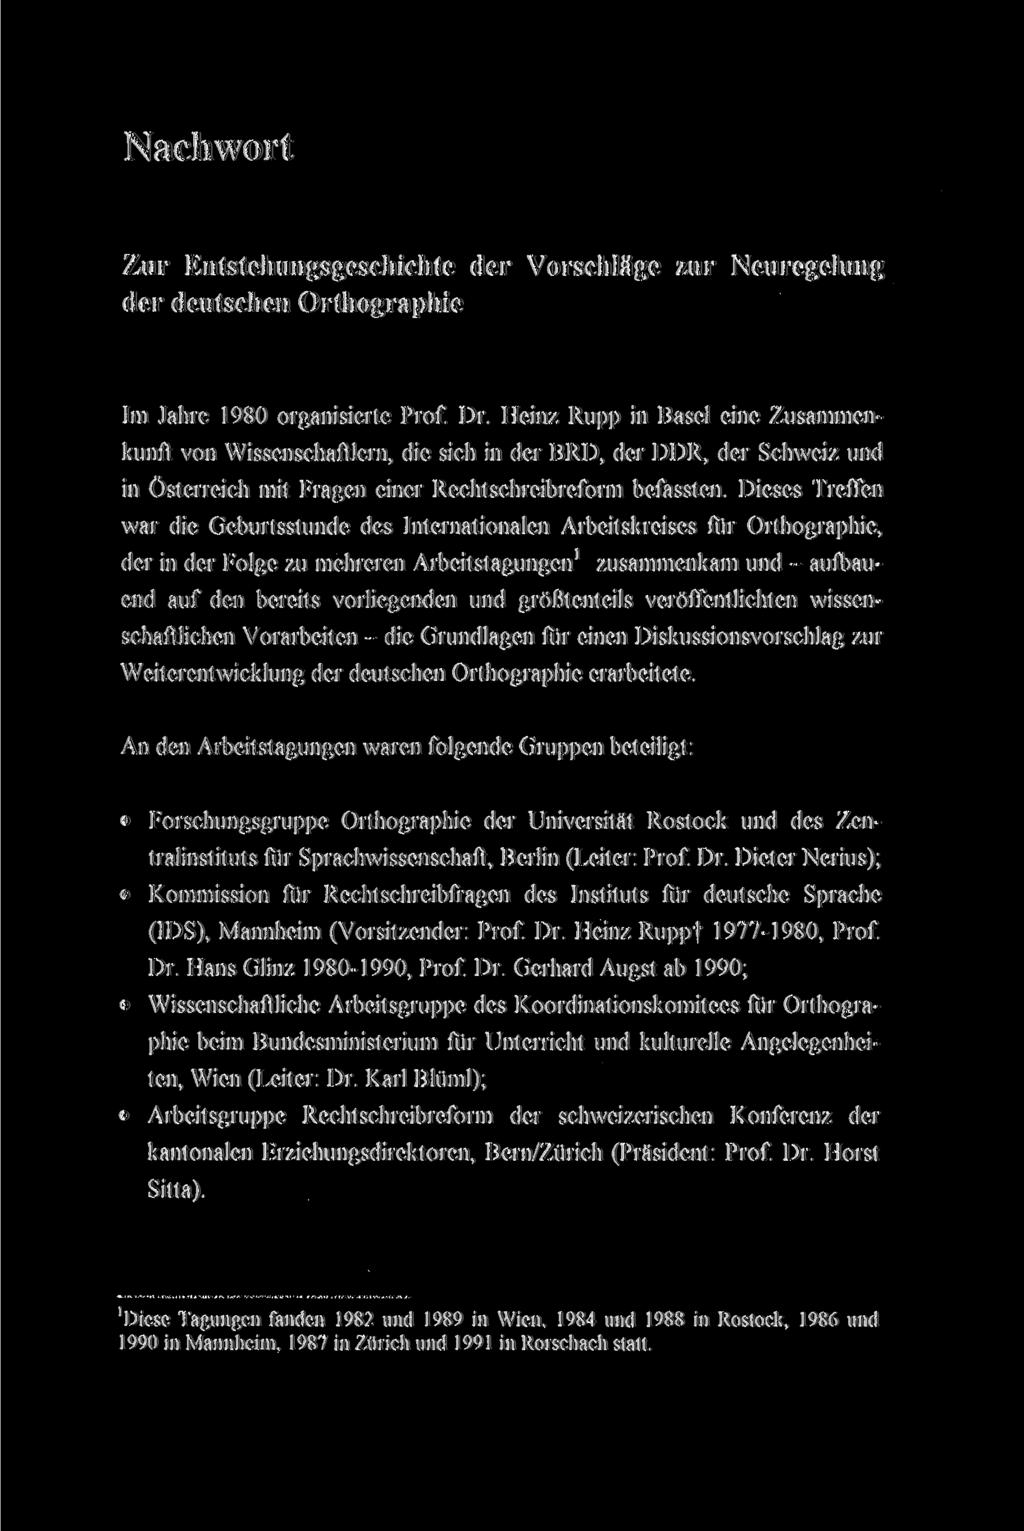 Erschienen in: Internationaler Arbeitskreis für Orthographie (Hrsg.): Deutsche Rechtschreibung. Regeln und Wörterverzeichnis. Vorlage für die amtliche Regelung. Tübingen: Narr, 1995. S. 265-270.